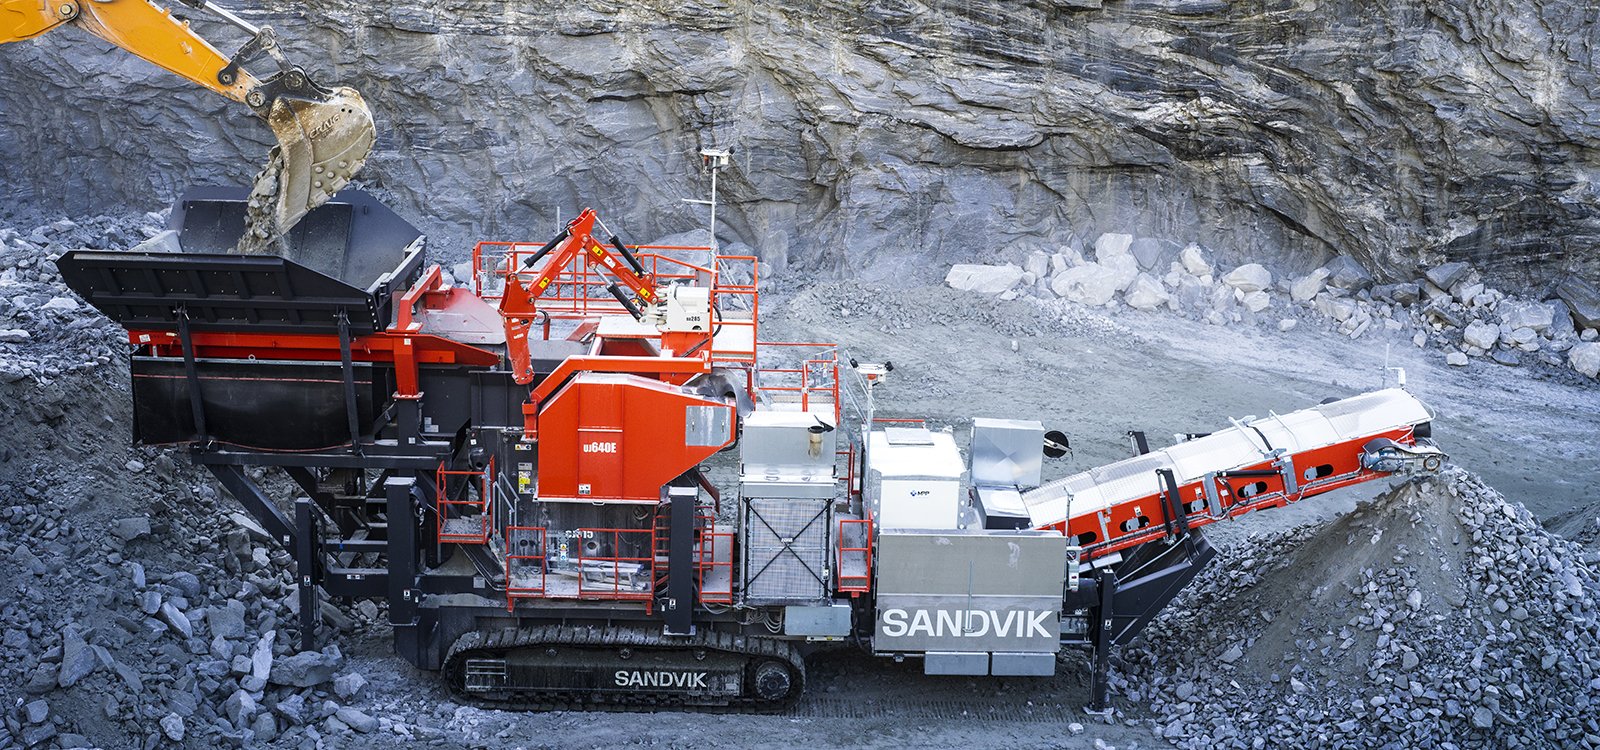 O Sandvik UJ640 possui uma extensão do transportador do alimentador de 18 m3 para permitir carregamento mais rápido.